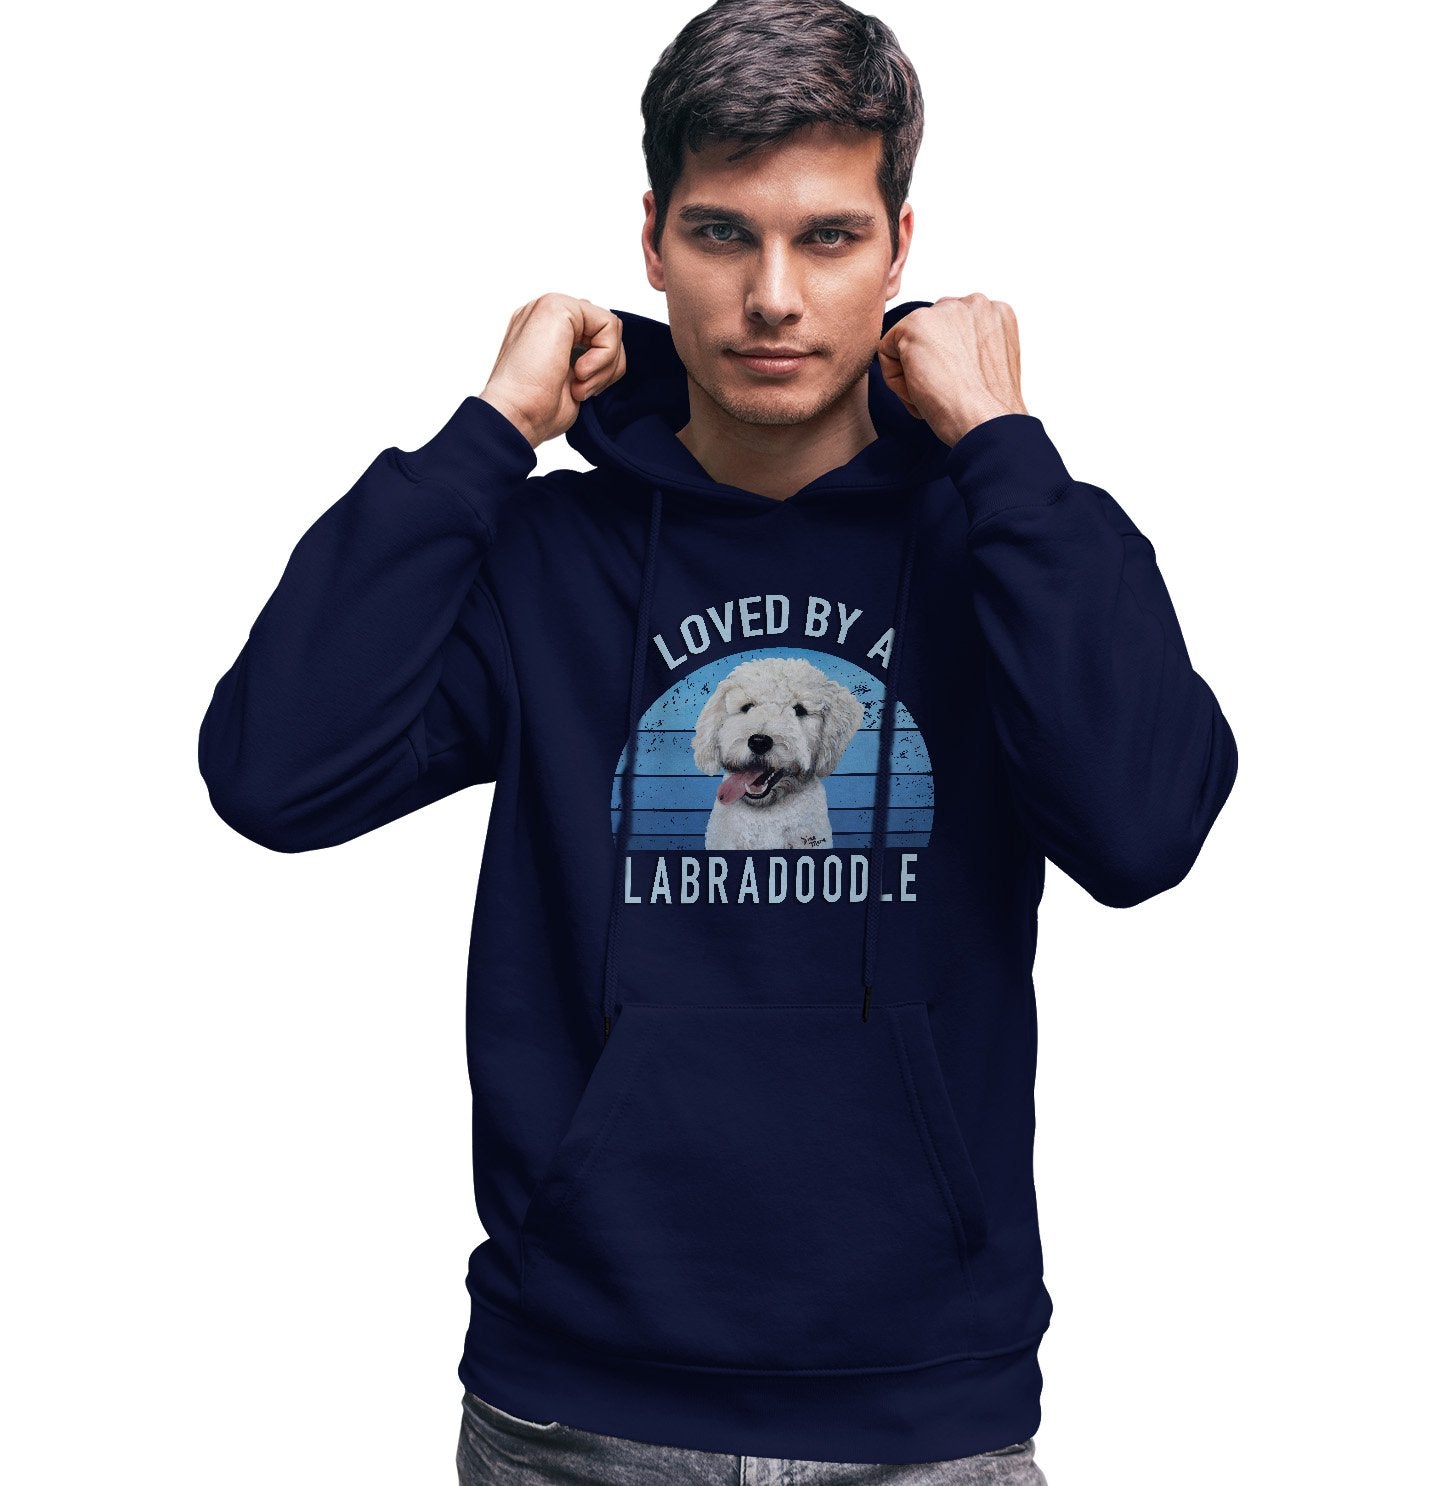 Loved By A Labradoodle - Adult Unisex Hoodie Sweatshirt